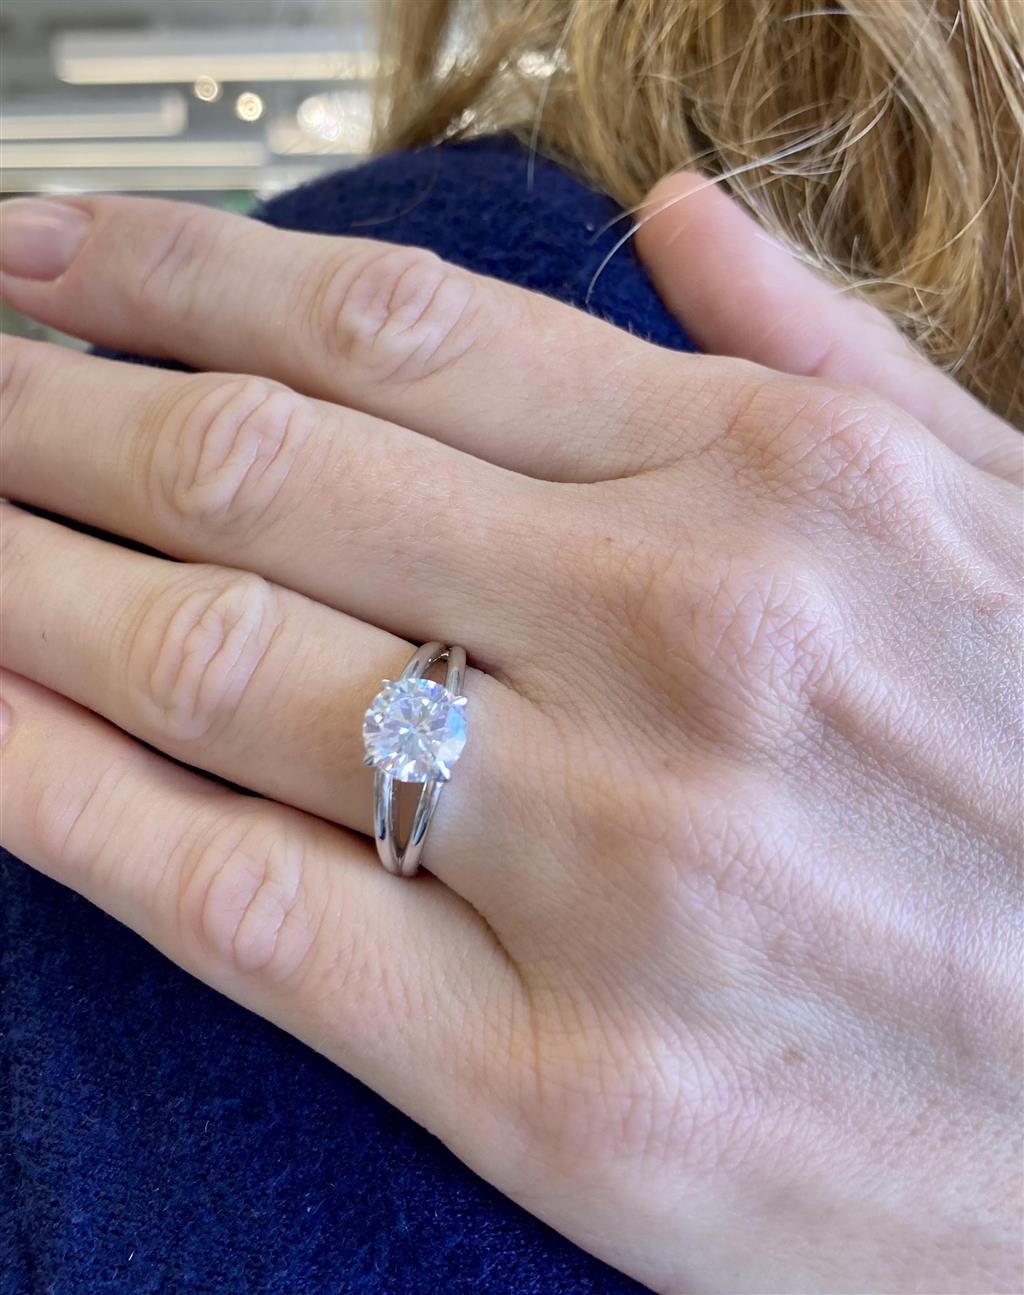 Semi-Mount Diamond 18K White Gold Split Shank Engagement Ring